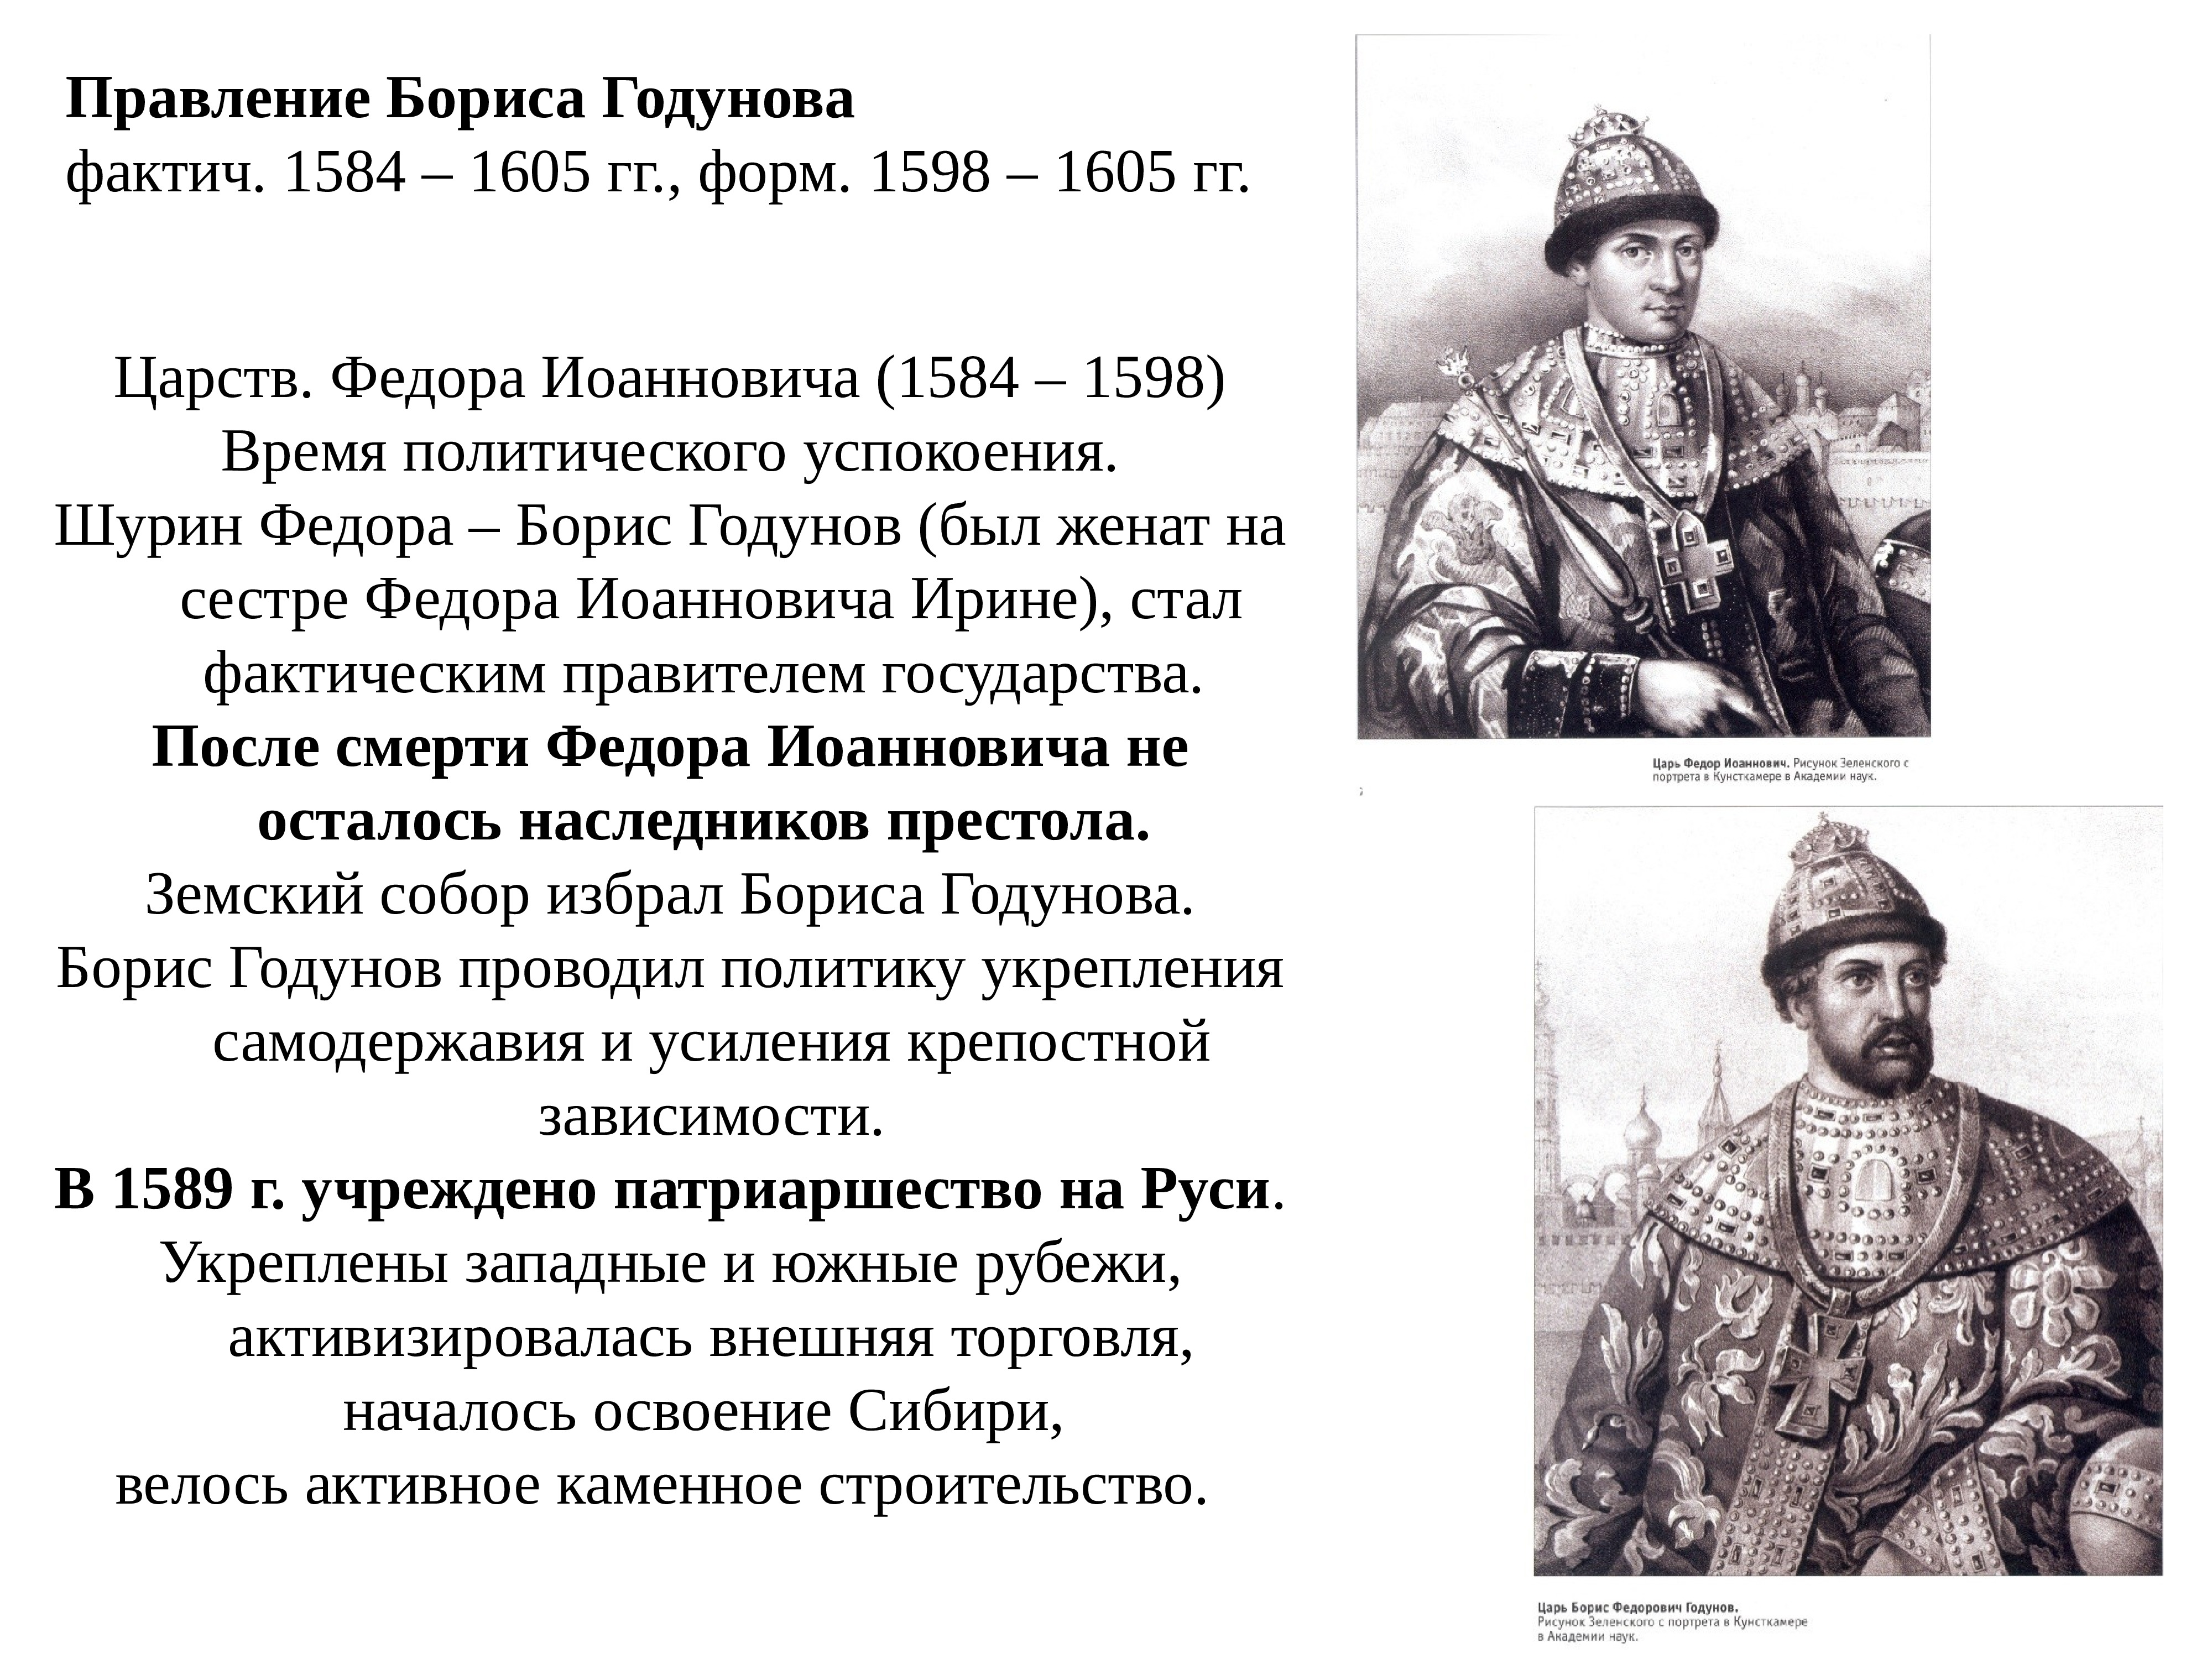 Реформы Бориса Годунова 1598-1605